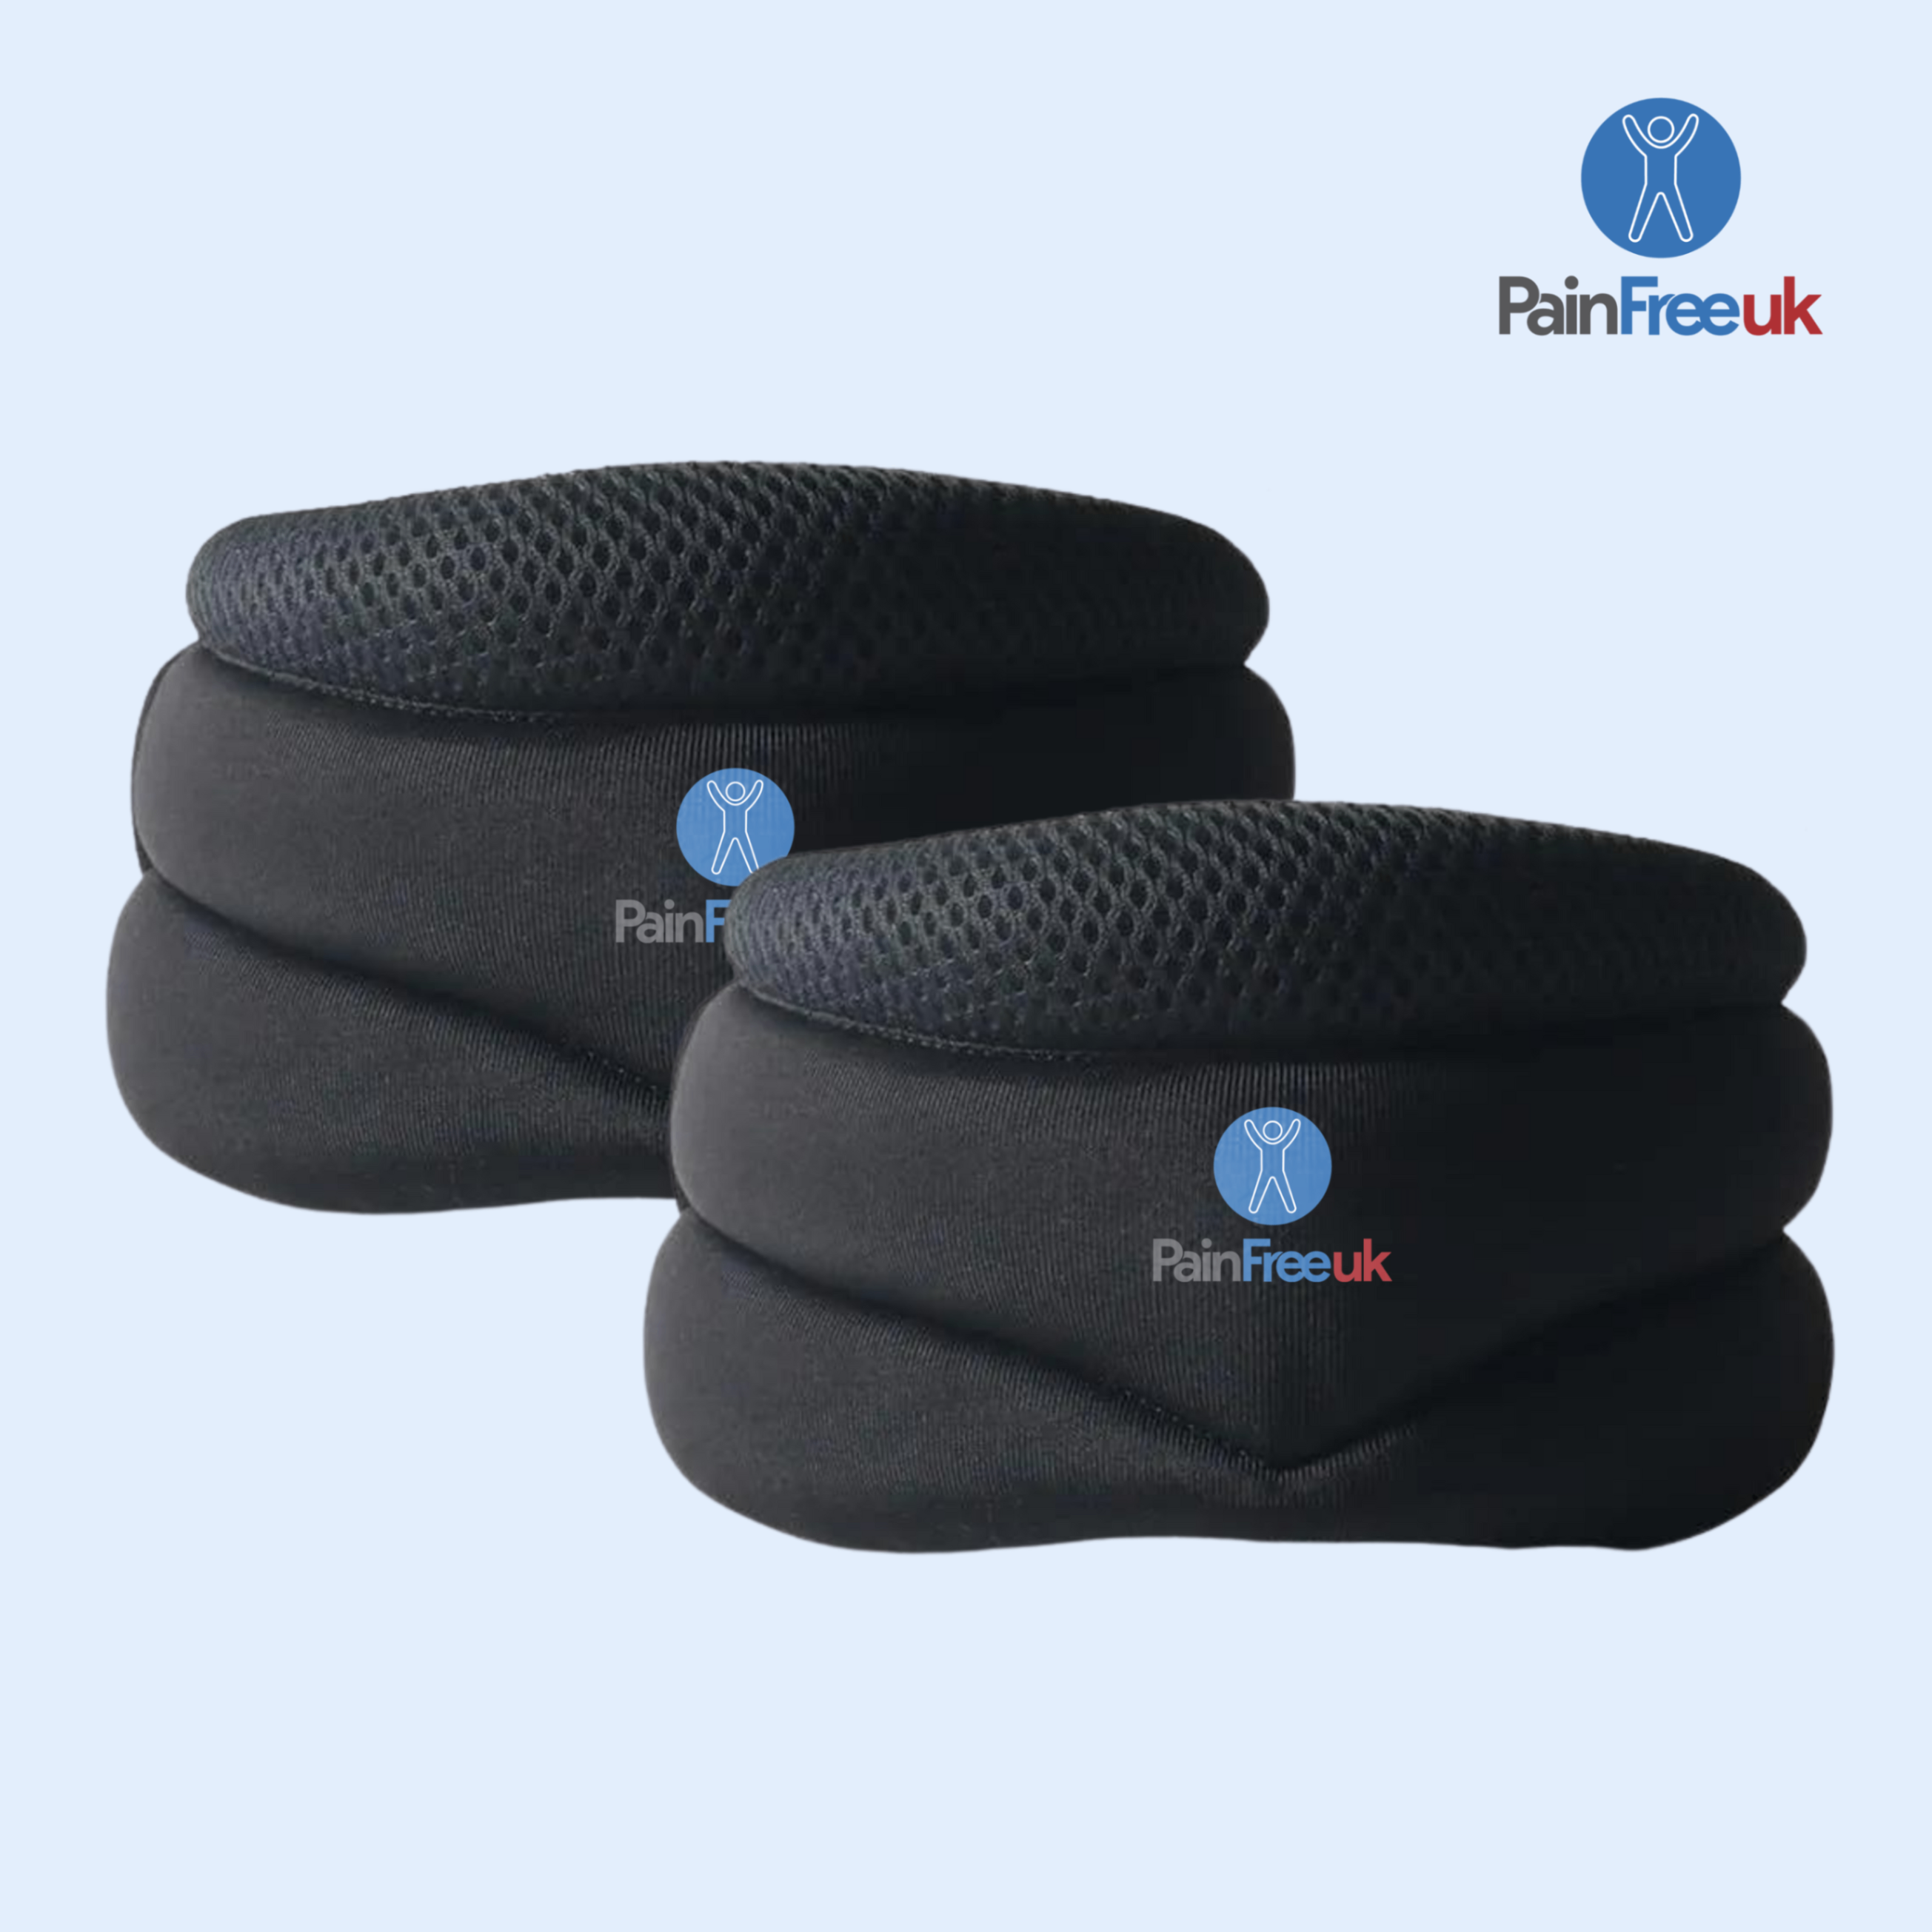 3x Pain Free UK™ SnoreStop - Sleep Apnea & Snoring Relief Neck Brace*